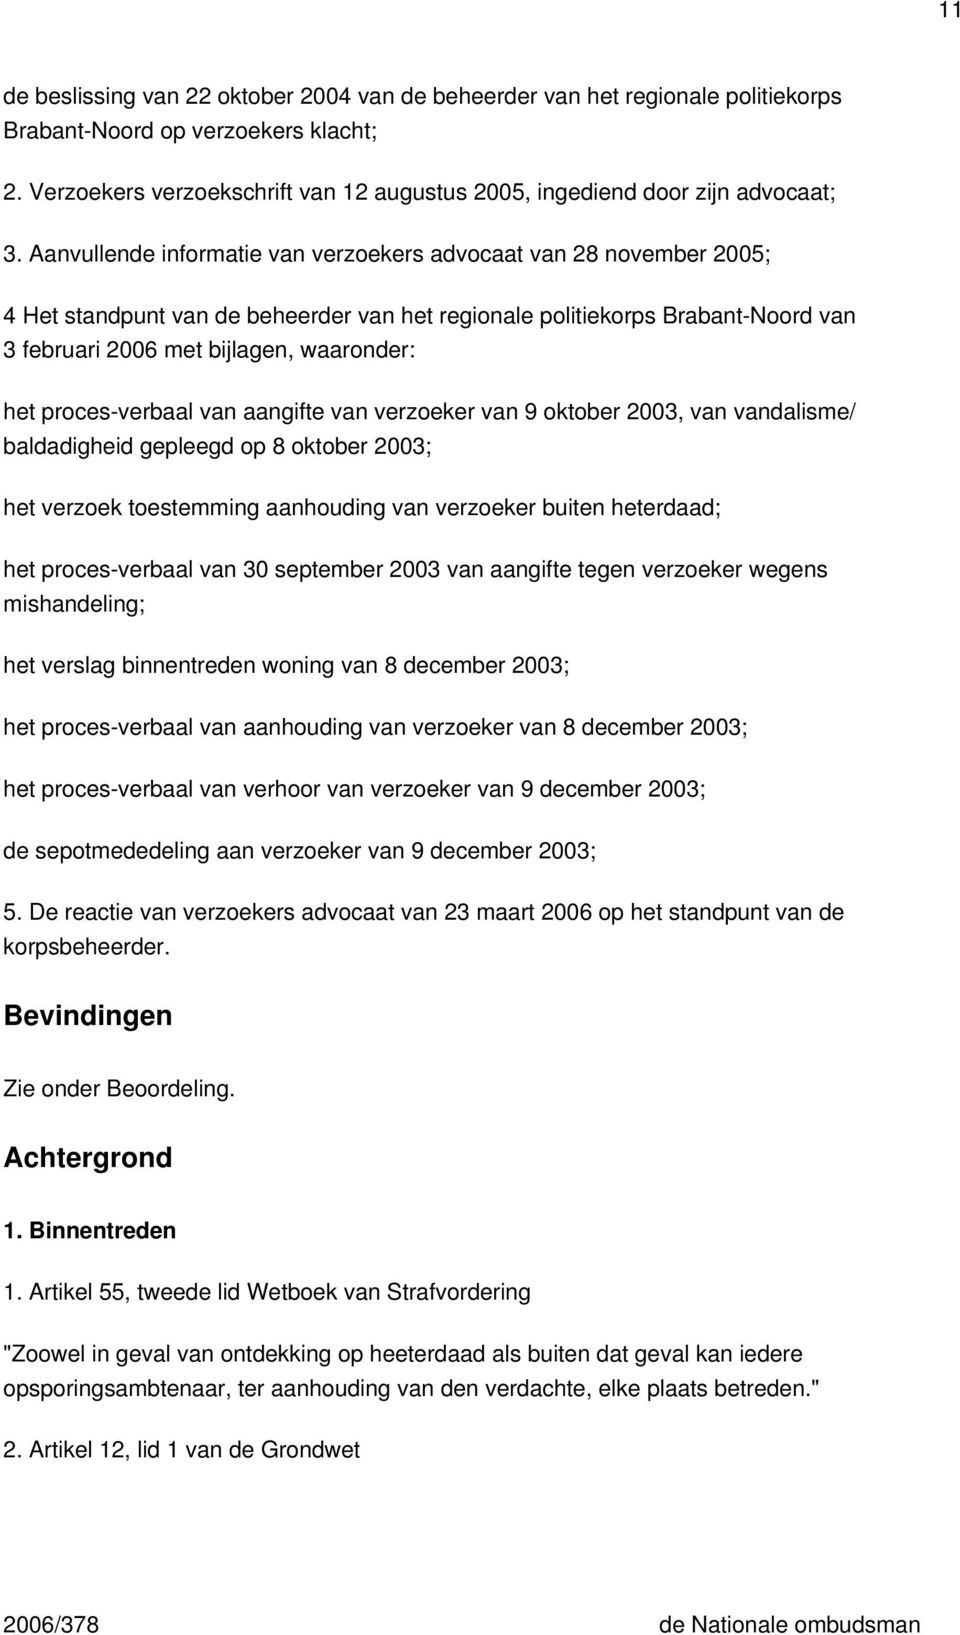 Aanvullende informatie van verzoekers advocaat van 28 november 2005; 4 Het standpunt van de beheerder van het regionale politiekorps Brabant-Noord van 3 februari 2006 met bijlagen, waaronder: het